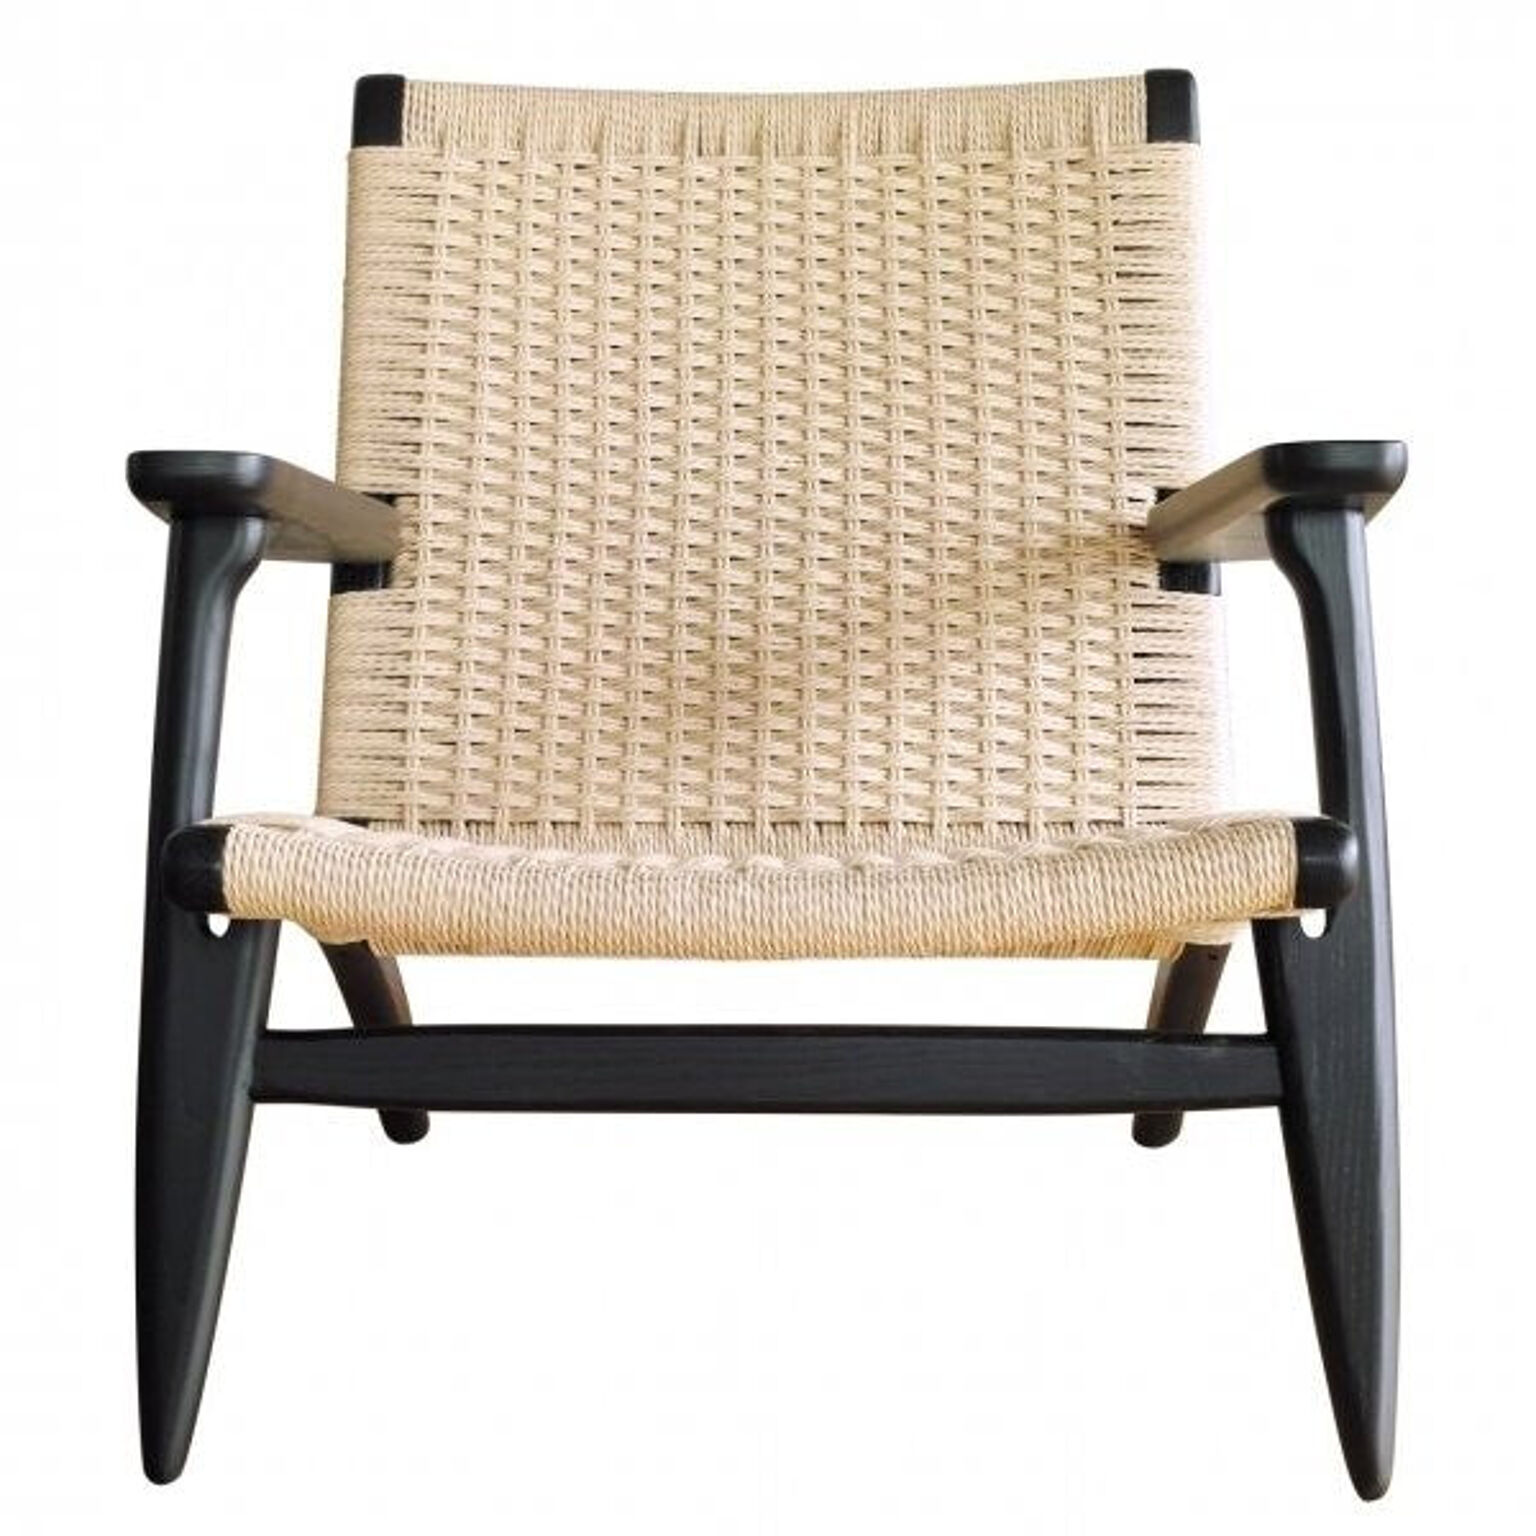 チェア 椅子 おしゃれ 北欧 デザイナーズ 家具 ミッドセンチュリー デザイン ラウンジチェア 【CH-25】